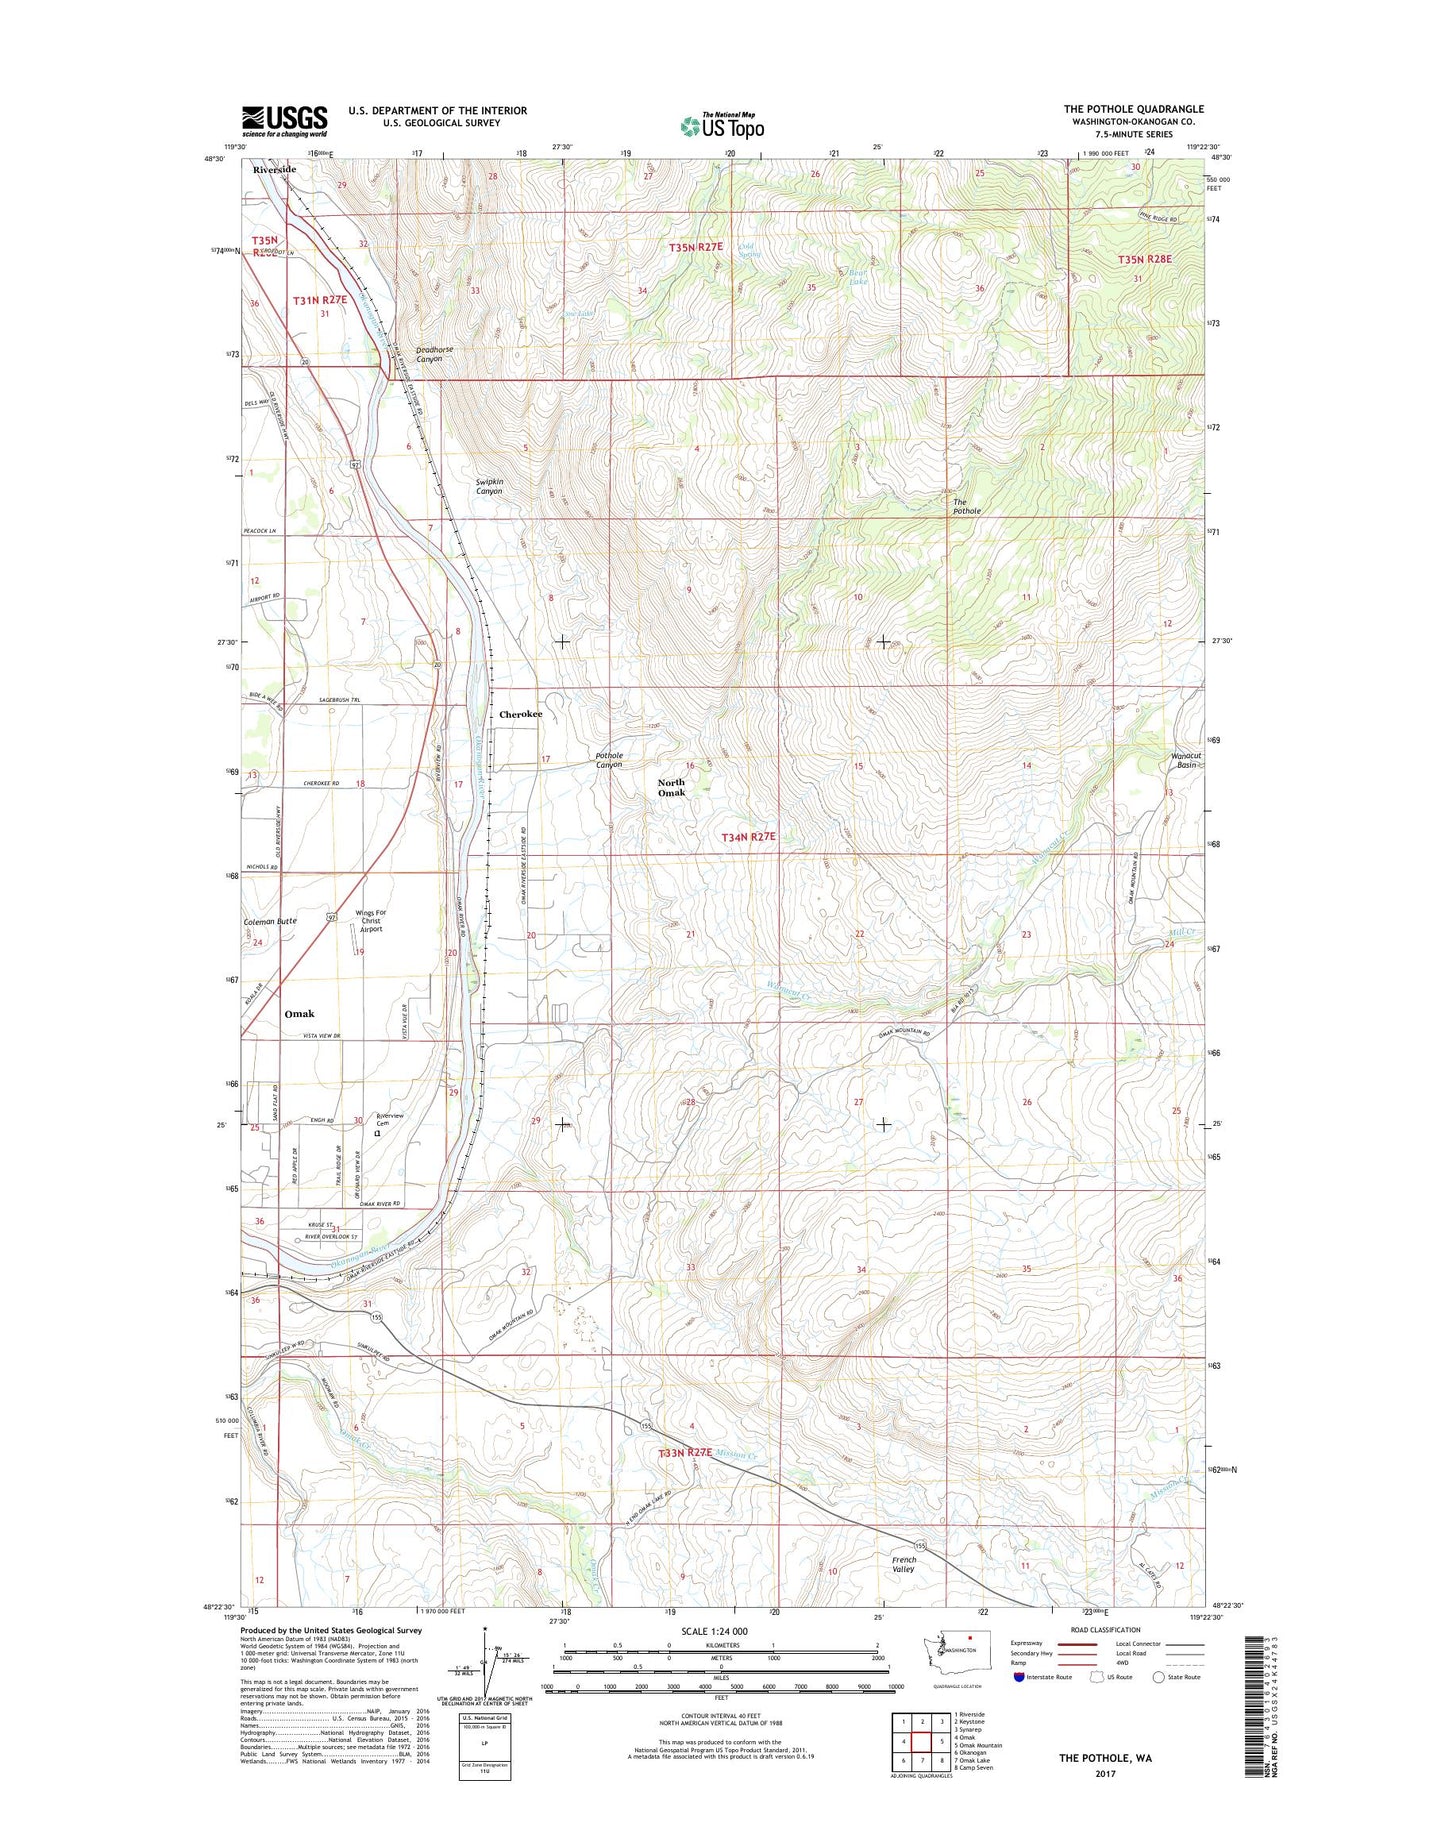 The Pothole Washington US Topo Map Image